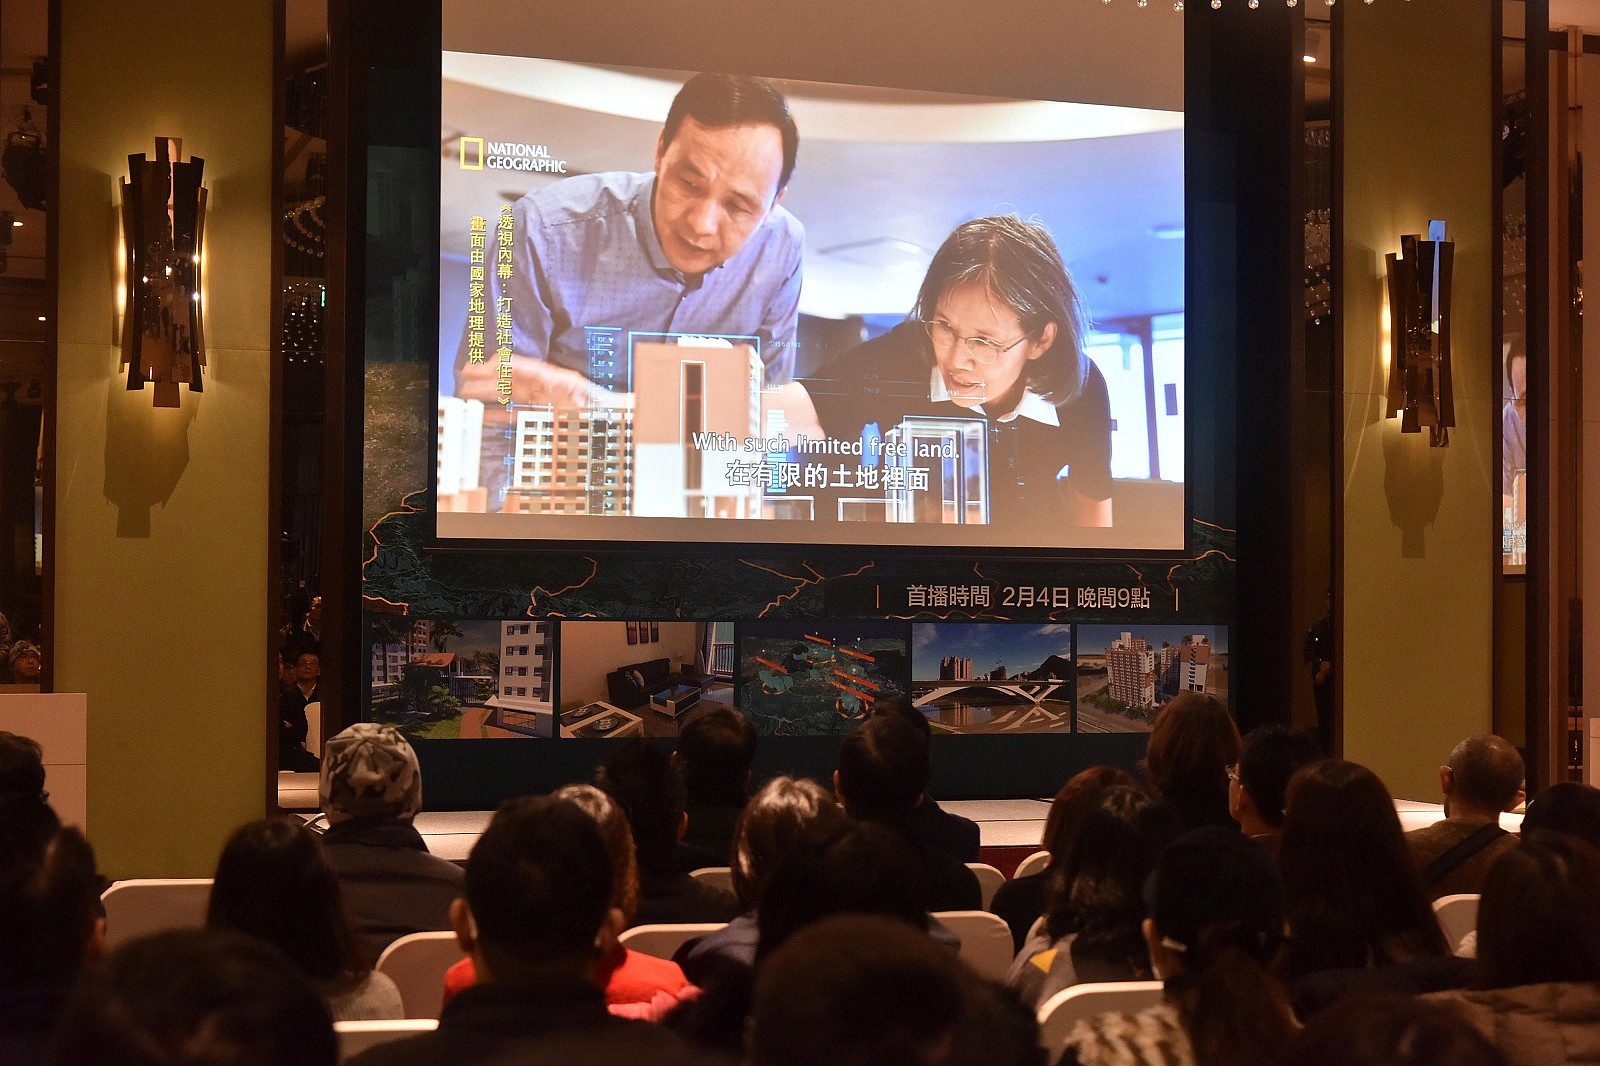 朱市長希望透過紀錄片紀錄台灣推動社會住宅的經驗，以及大家辛苦努力的過程